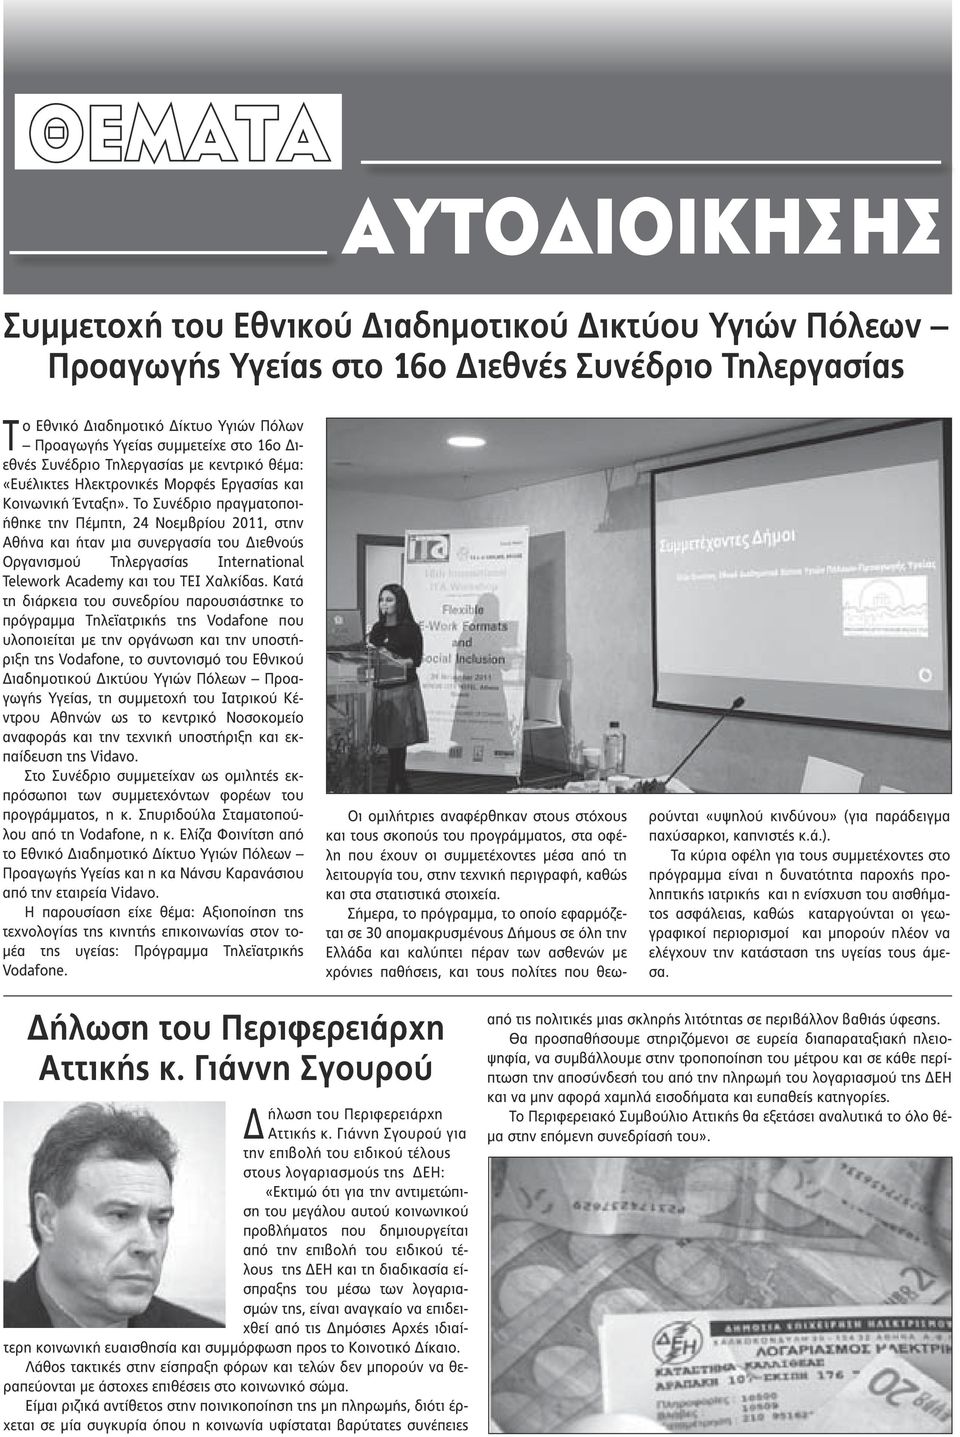 Το Συνέδριο πραγματοποιήθηκε την Πέμπτη, 24 Νοεμβρίου 2011, στην Αθήνα και ήταν μια συνεργασία του Διεθνούς Οργανισμού Τηλεργασίας International Telework Academy και του ΤΕΙ Χαλκίδας.